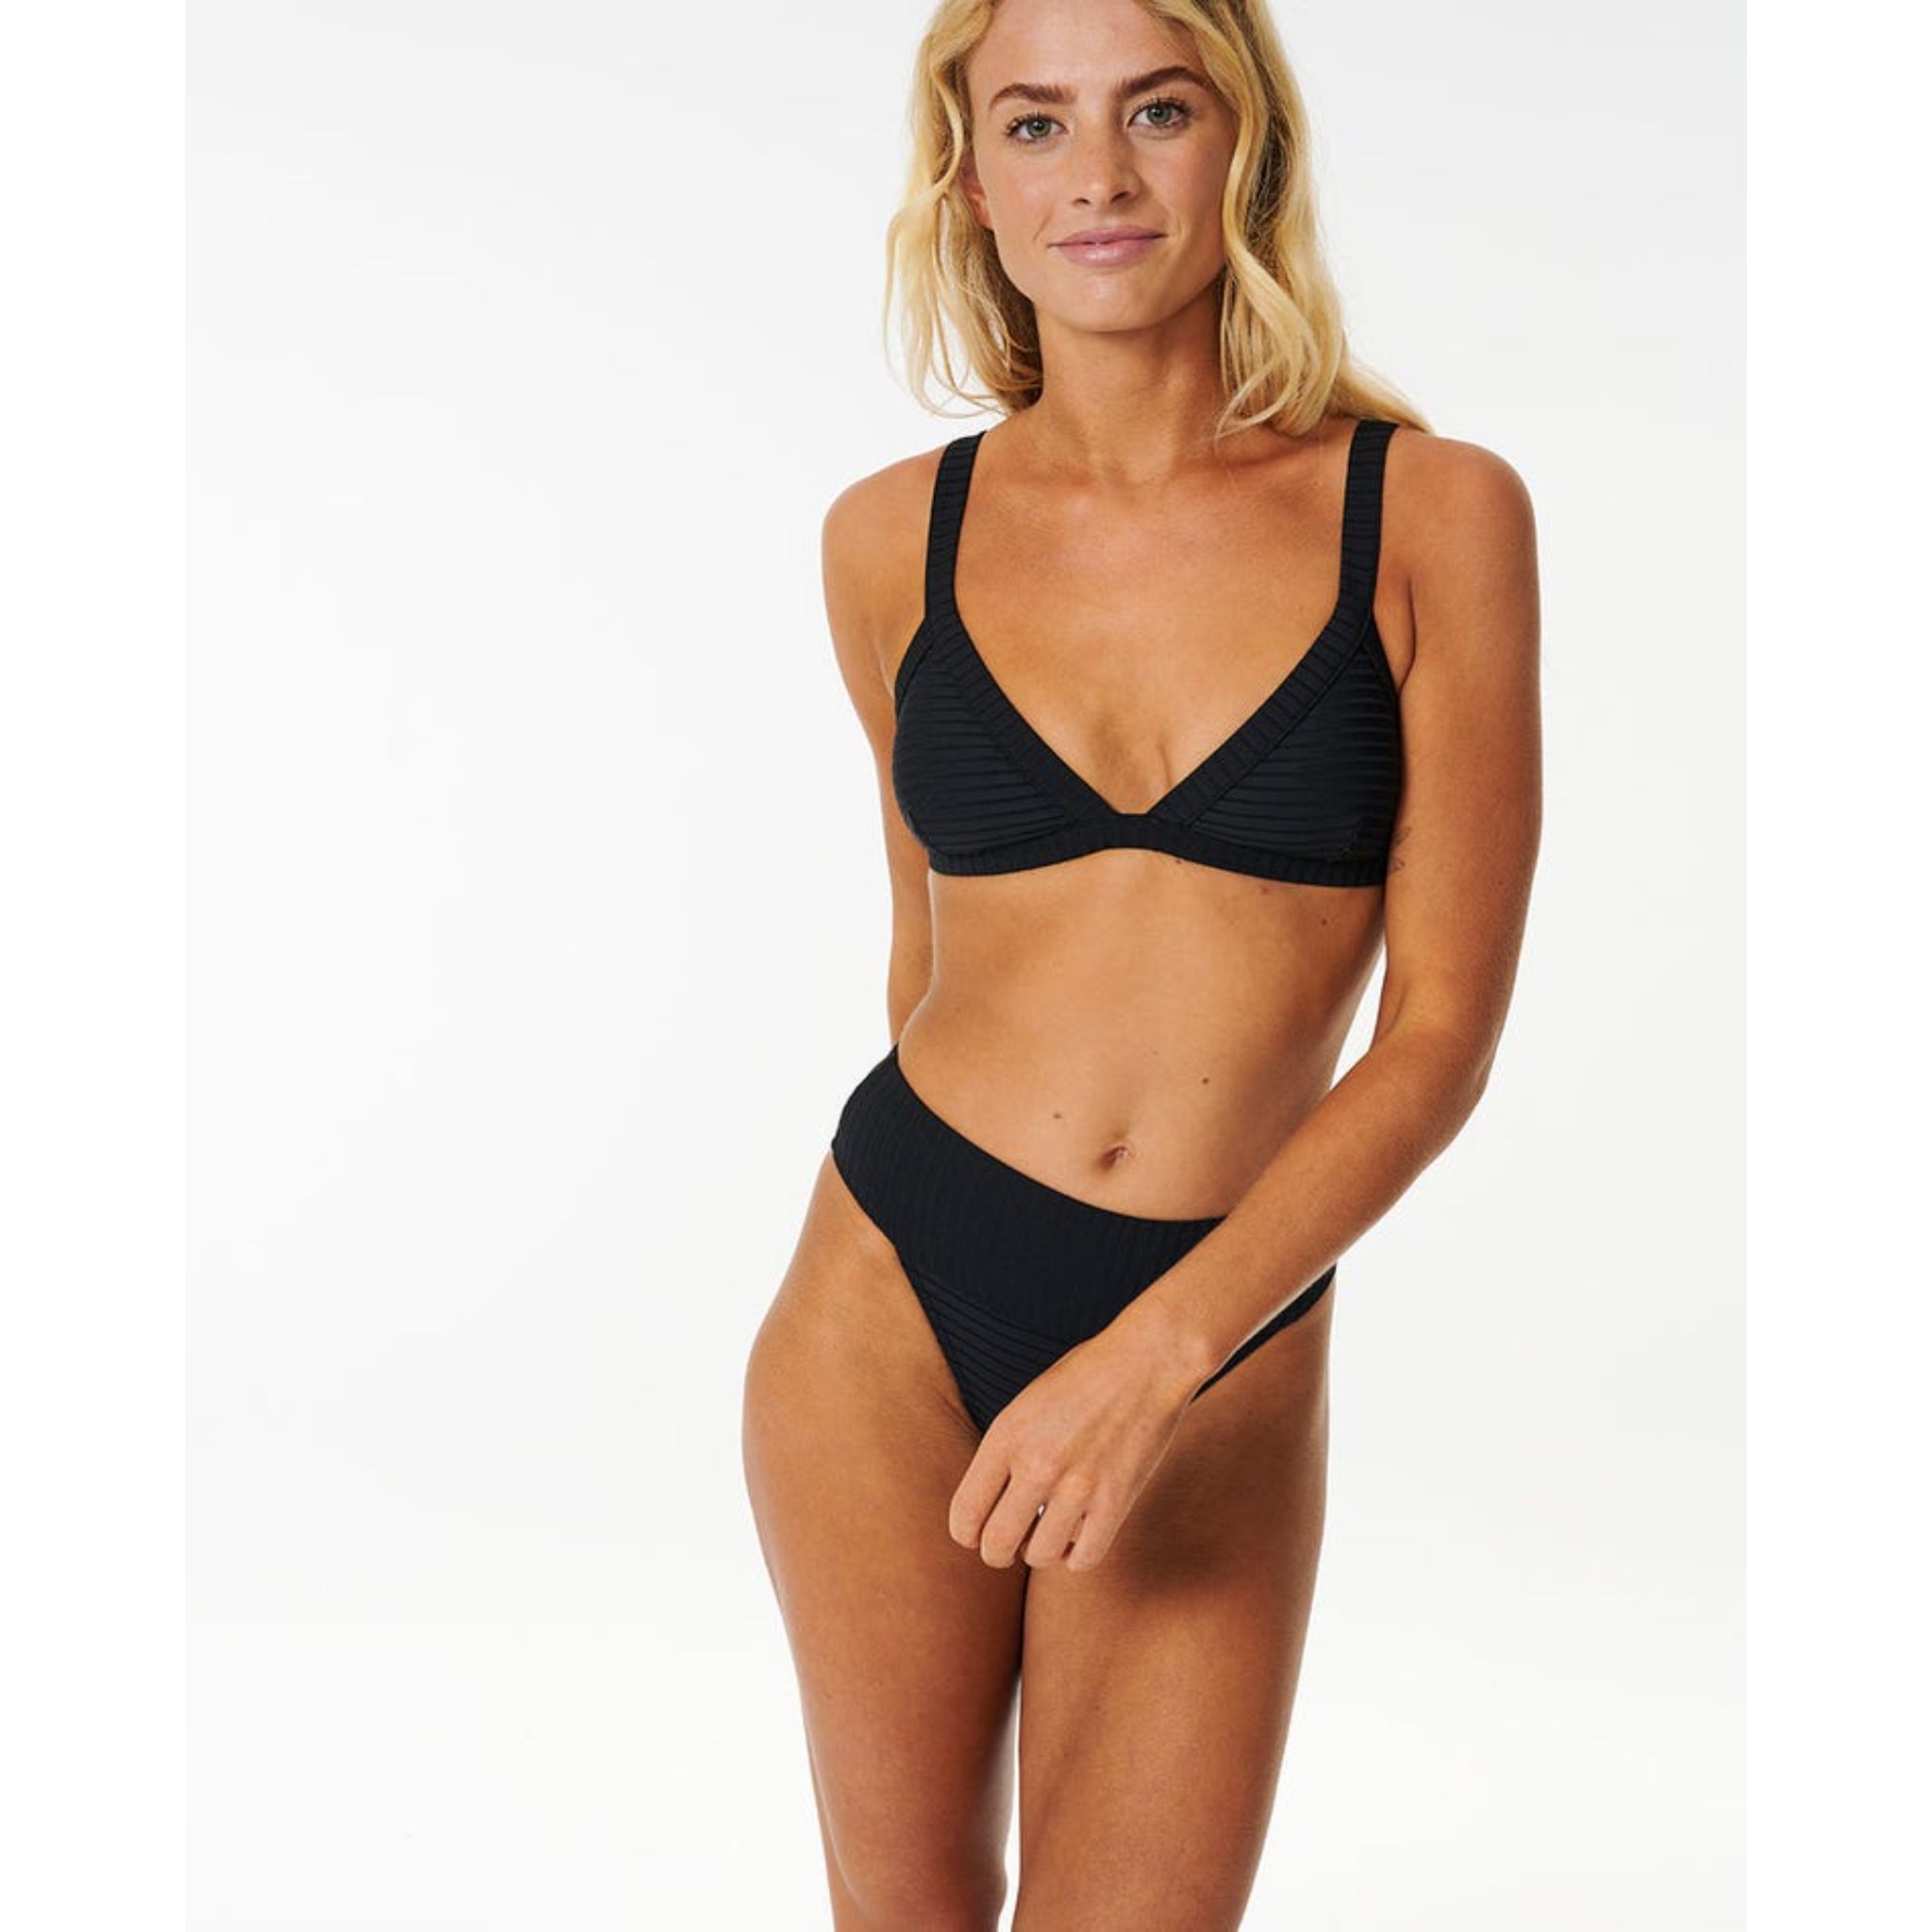 Rip Curl Premium Surf Wide Bind Tri Bikini Top